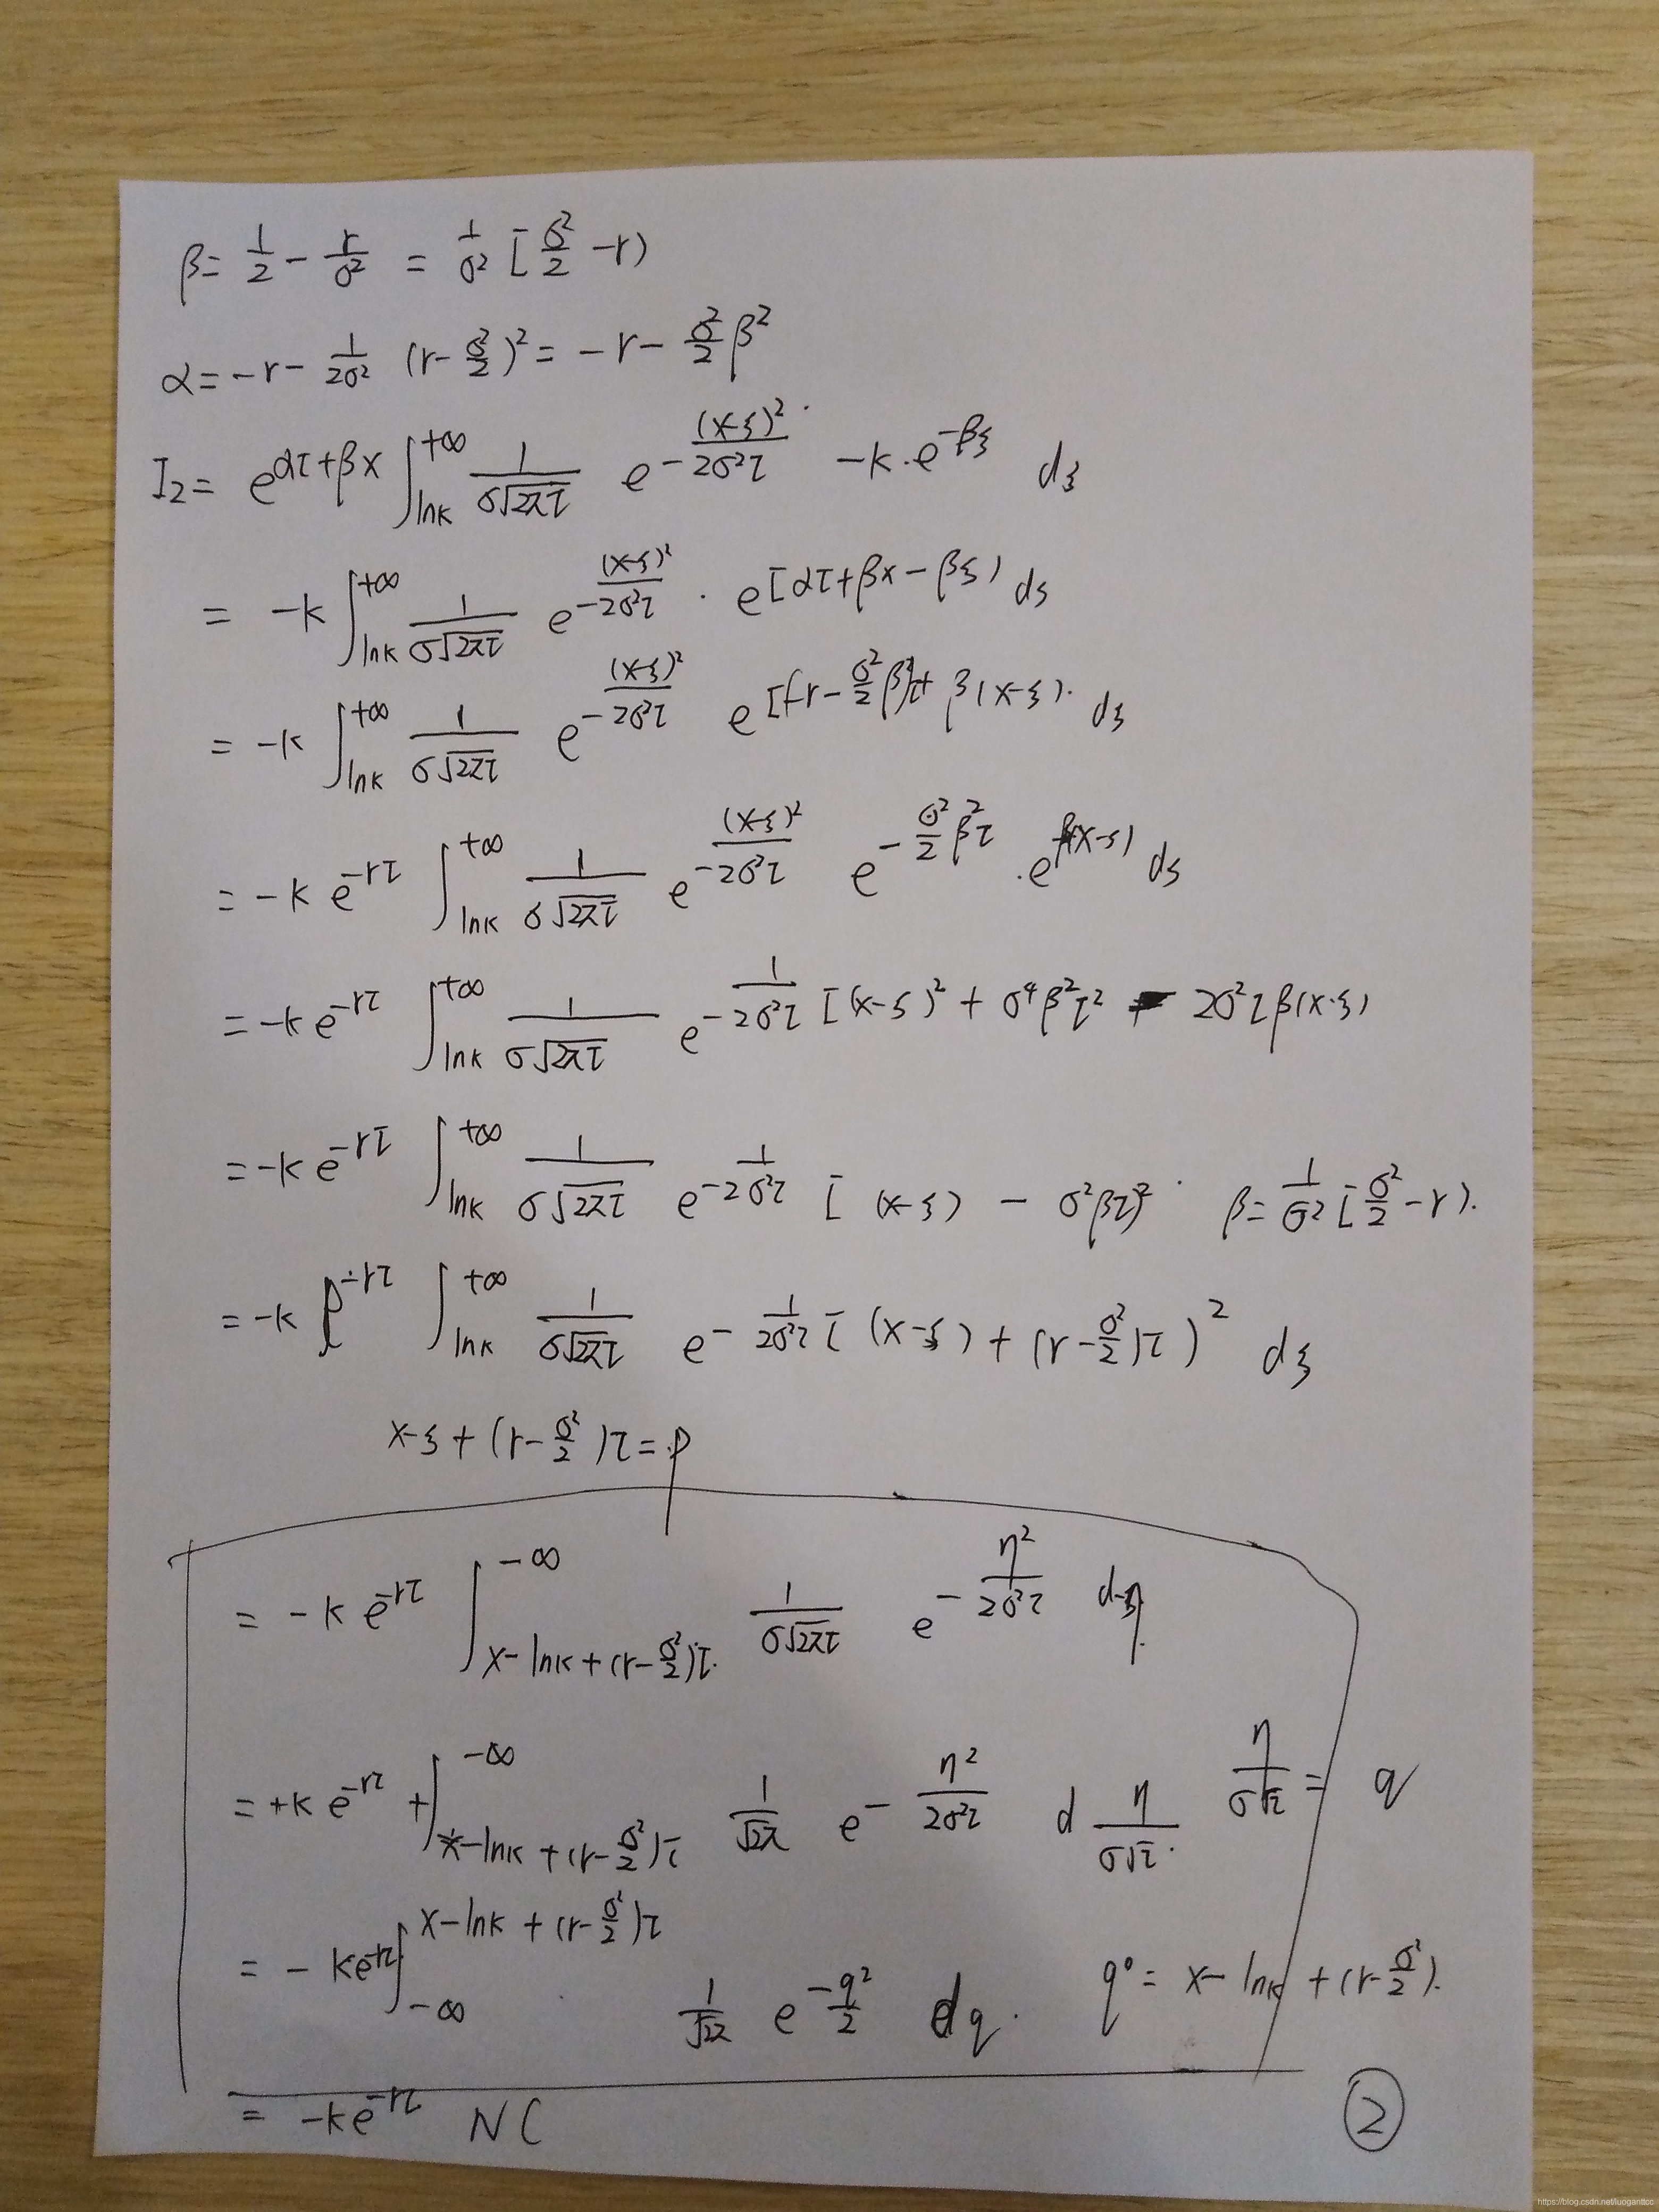 布莱克斯科尔斯模型（五)  方程求解过程_其它_04